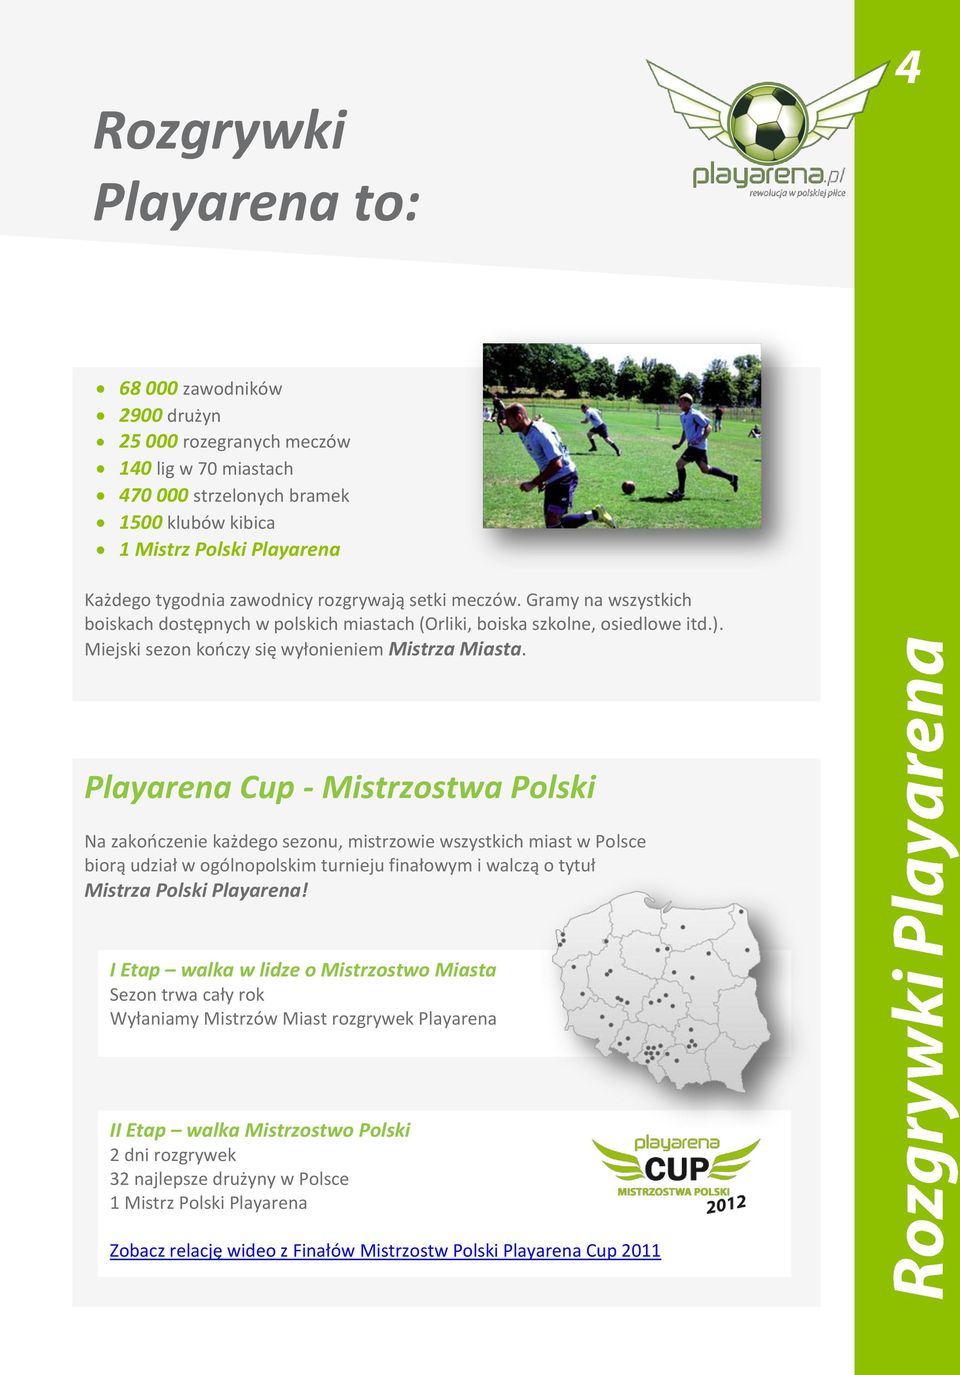 Playarena Cup - Mistrzostwa Polski Na zakooczenie każdego sezonu, mistrzowie wszystkich miast w Polsce biorą udział w ogólnopolskim turnieju finałowym i walczą o tytuł Mistrza Polski Playarena!